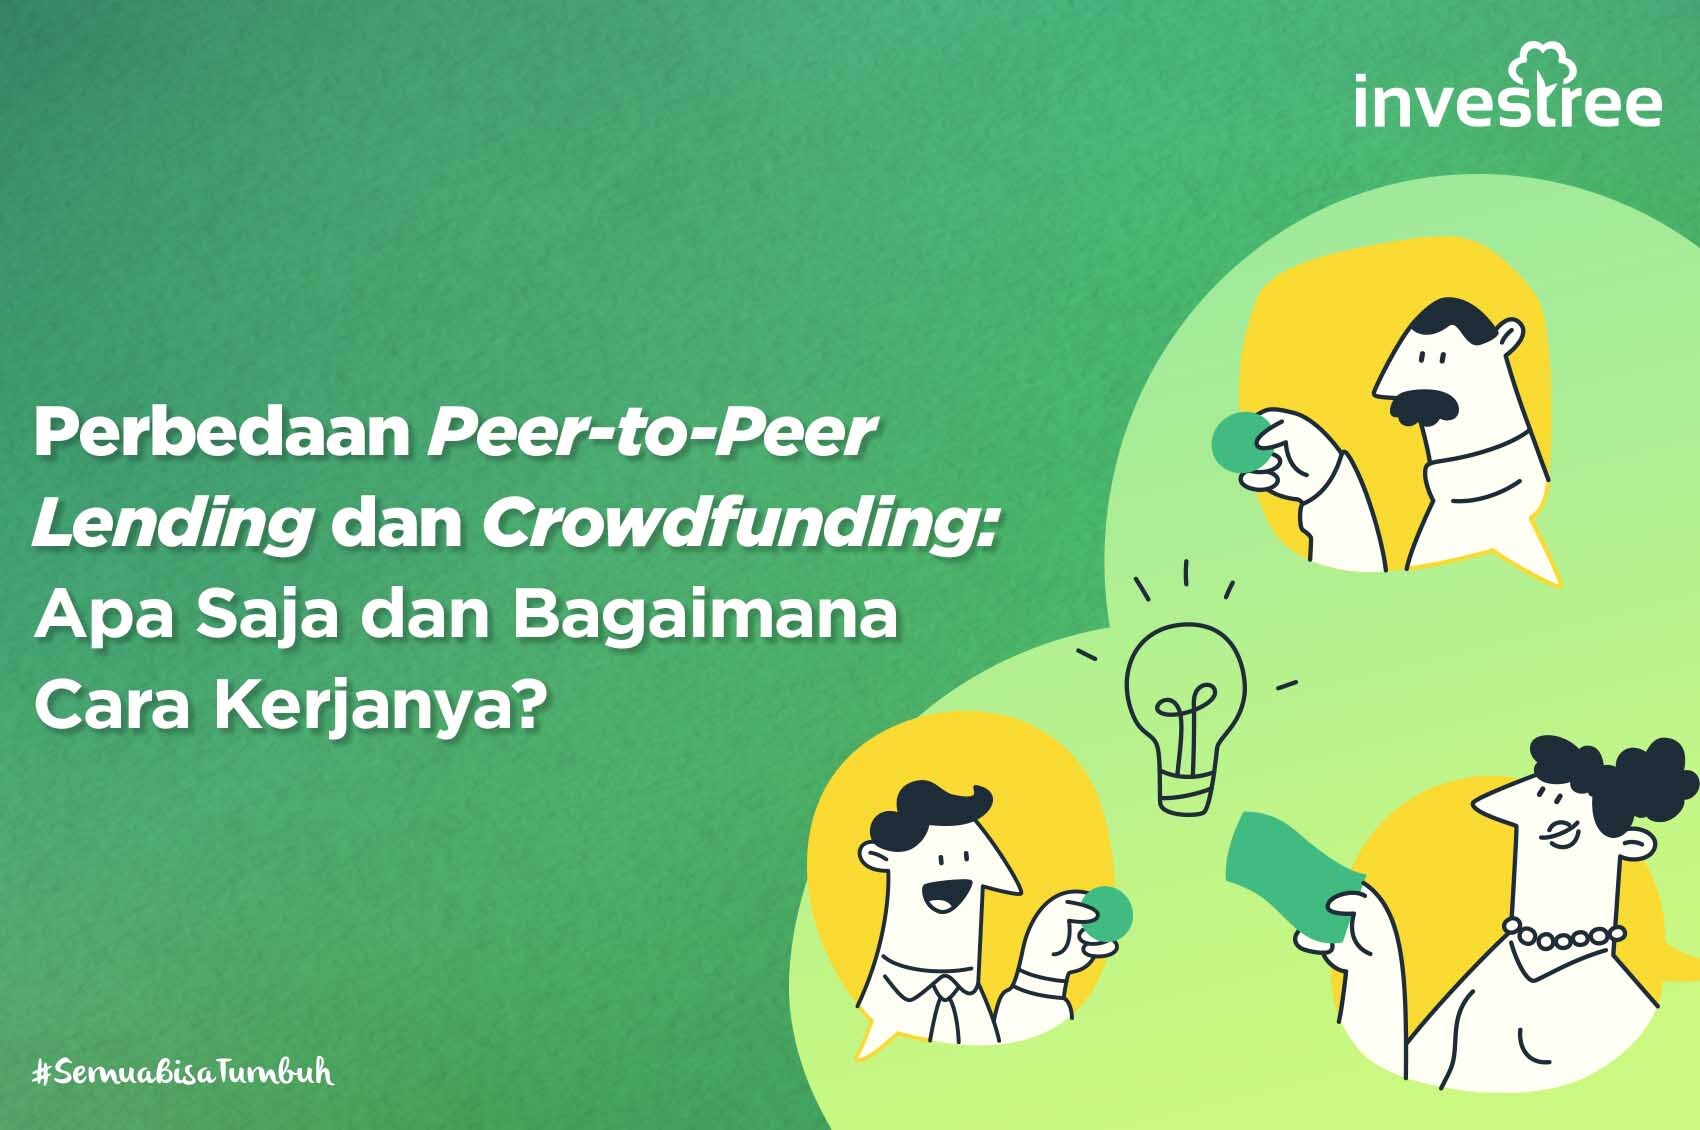 Perbedaan Peer-to-Peer Lending dan Crowdfunding